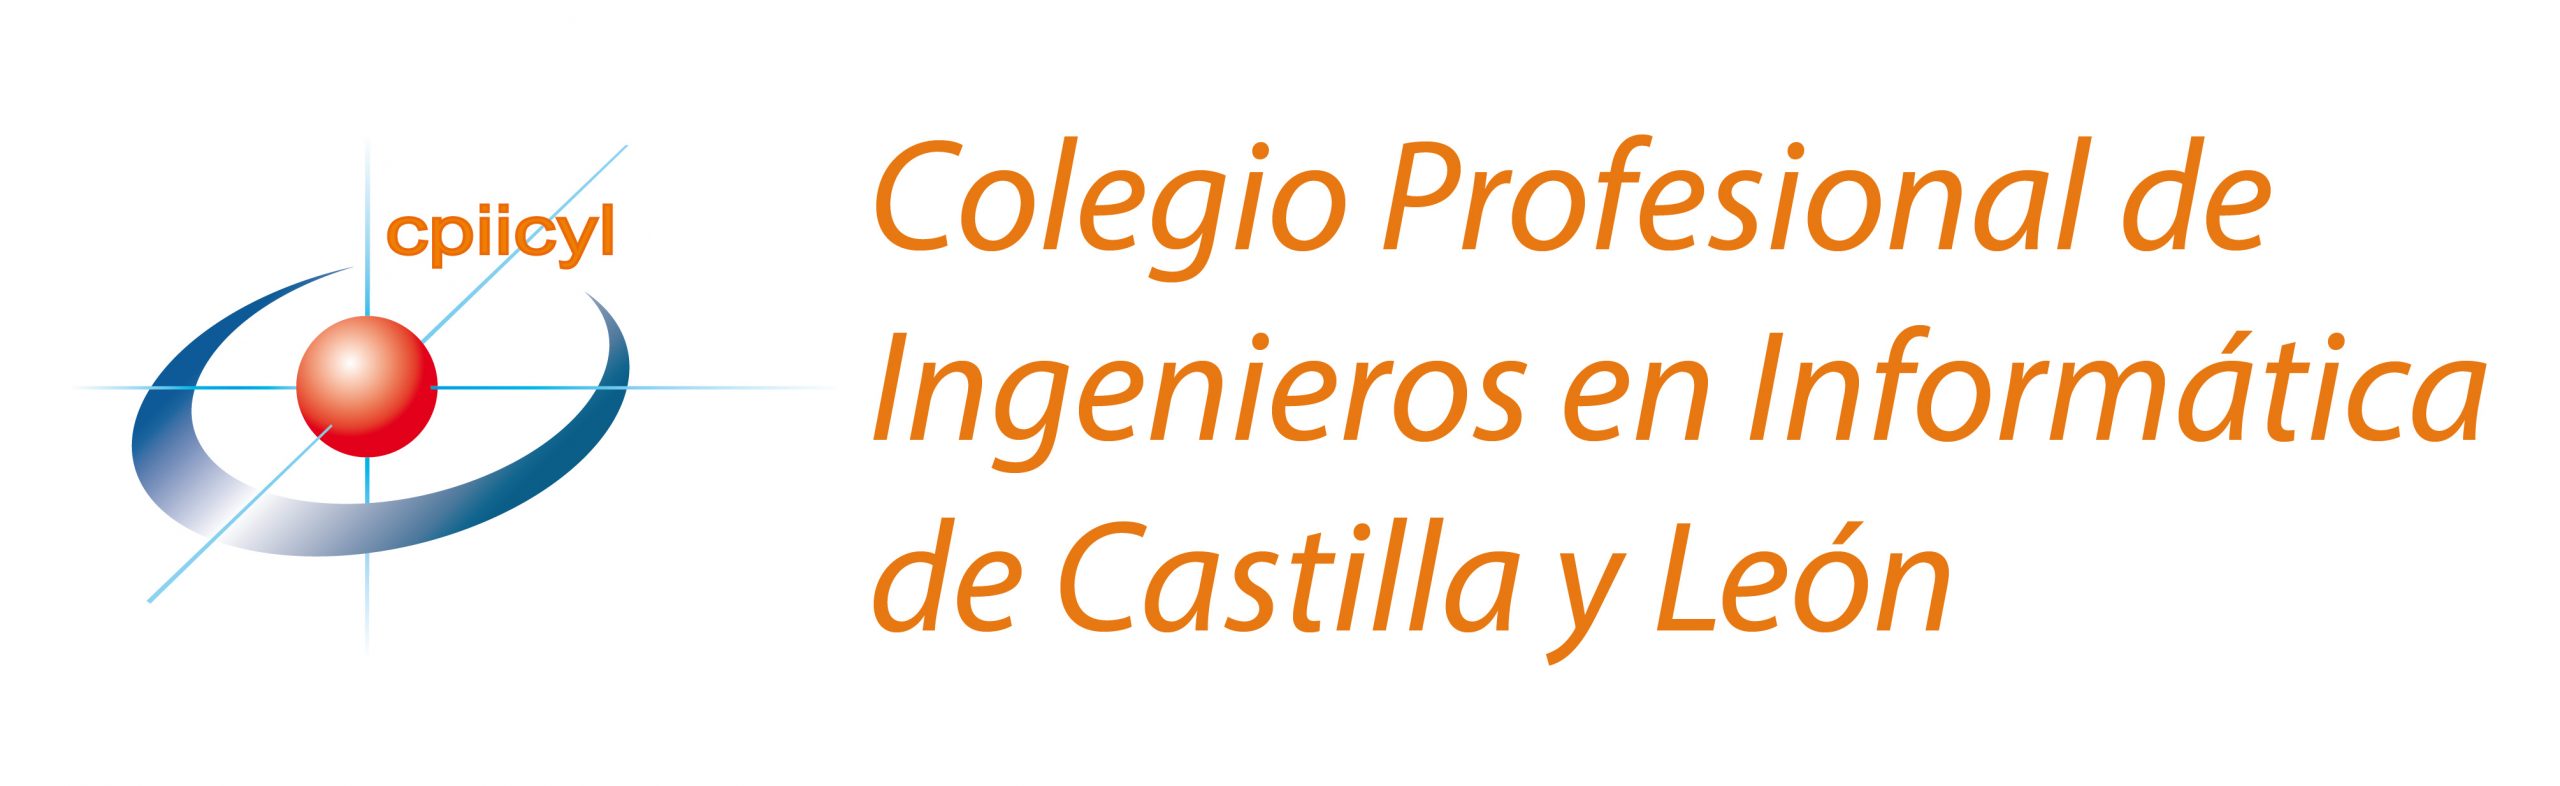 logo-Colegio-Ingenieros-01HD